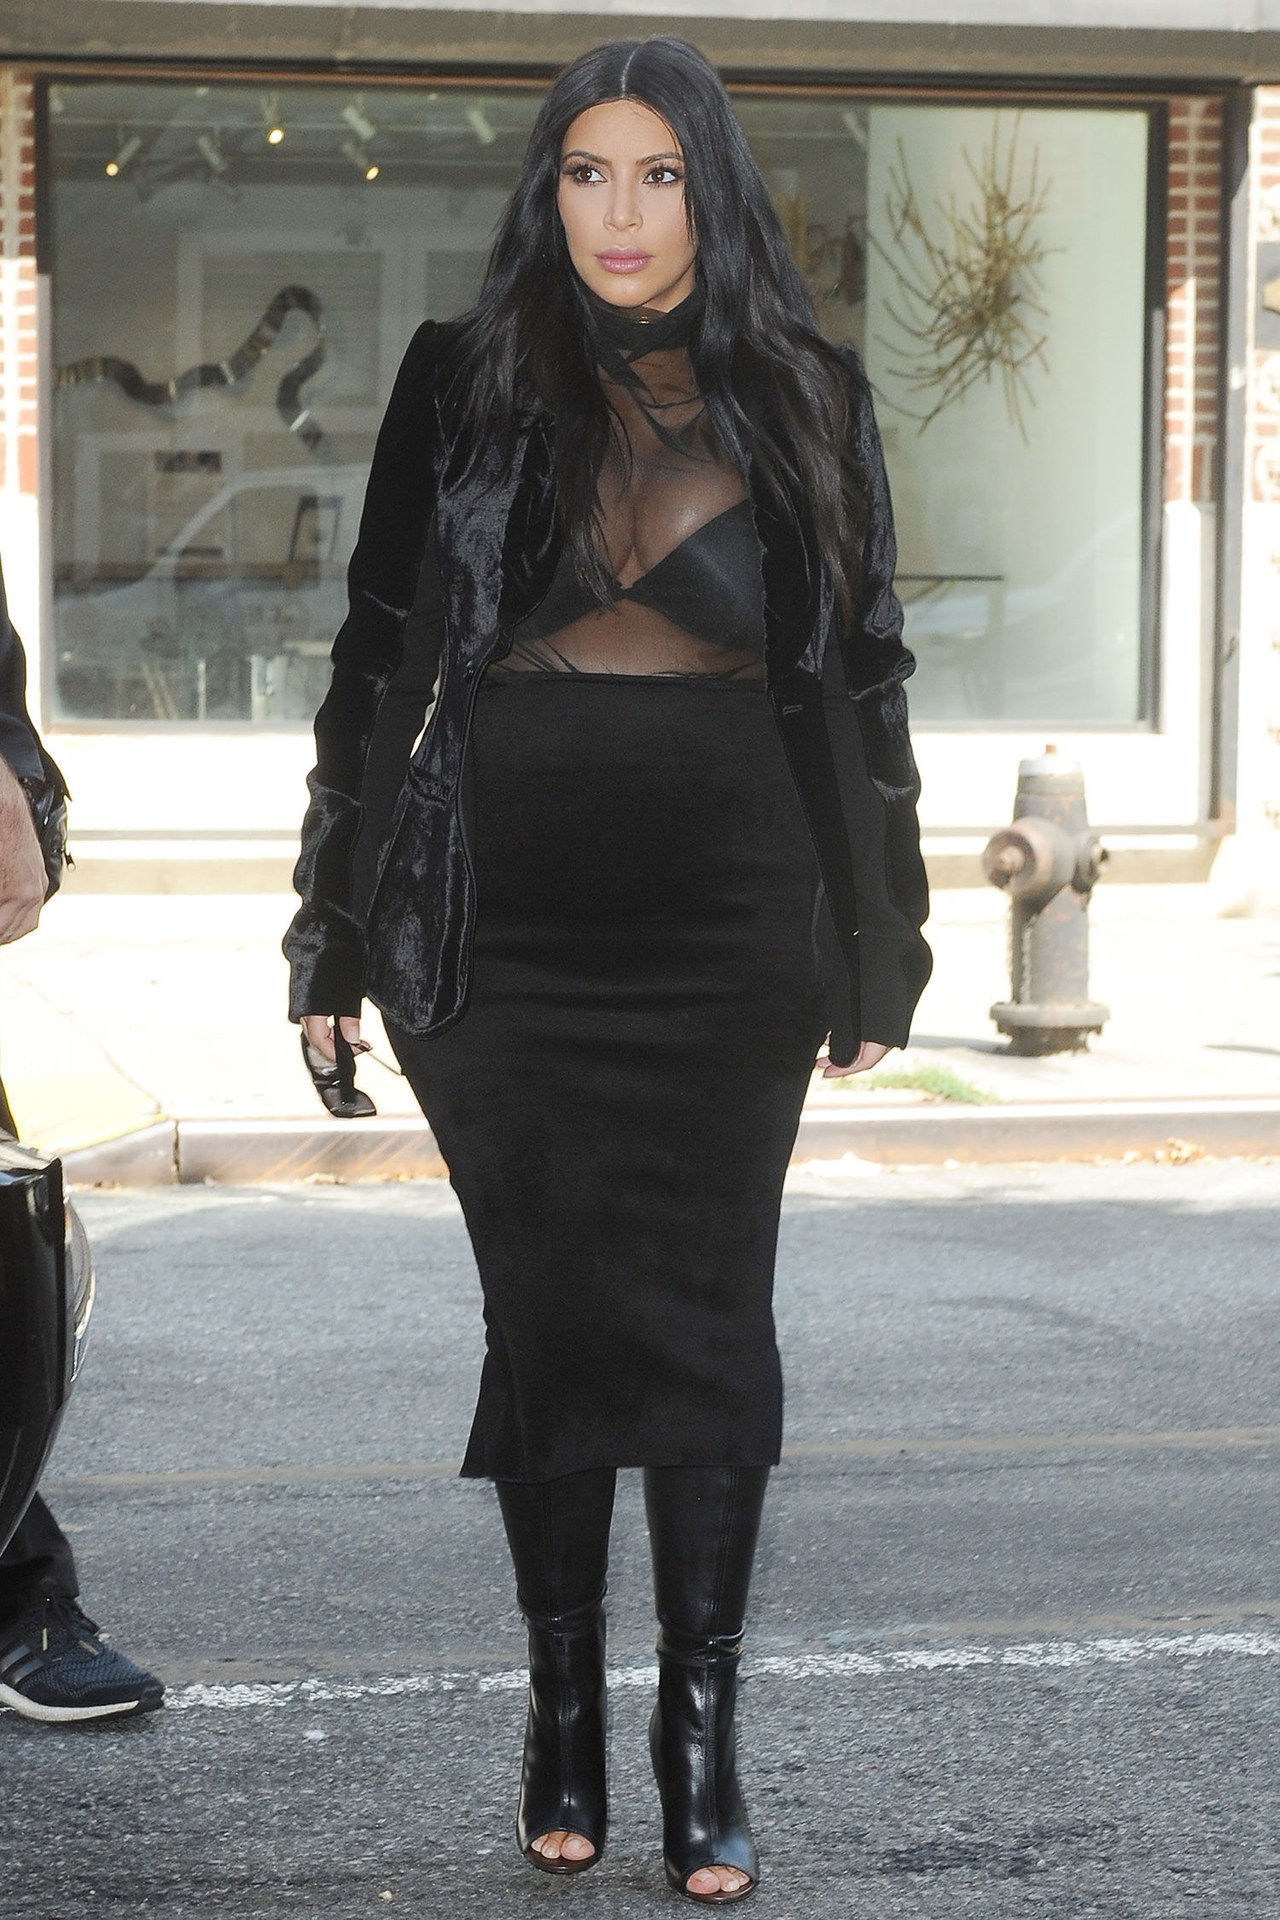 金 kardashian sheer black tank top skirt